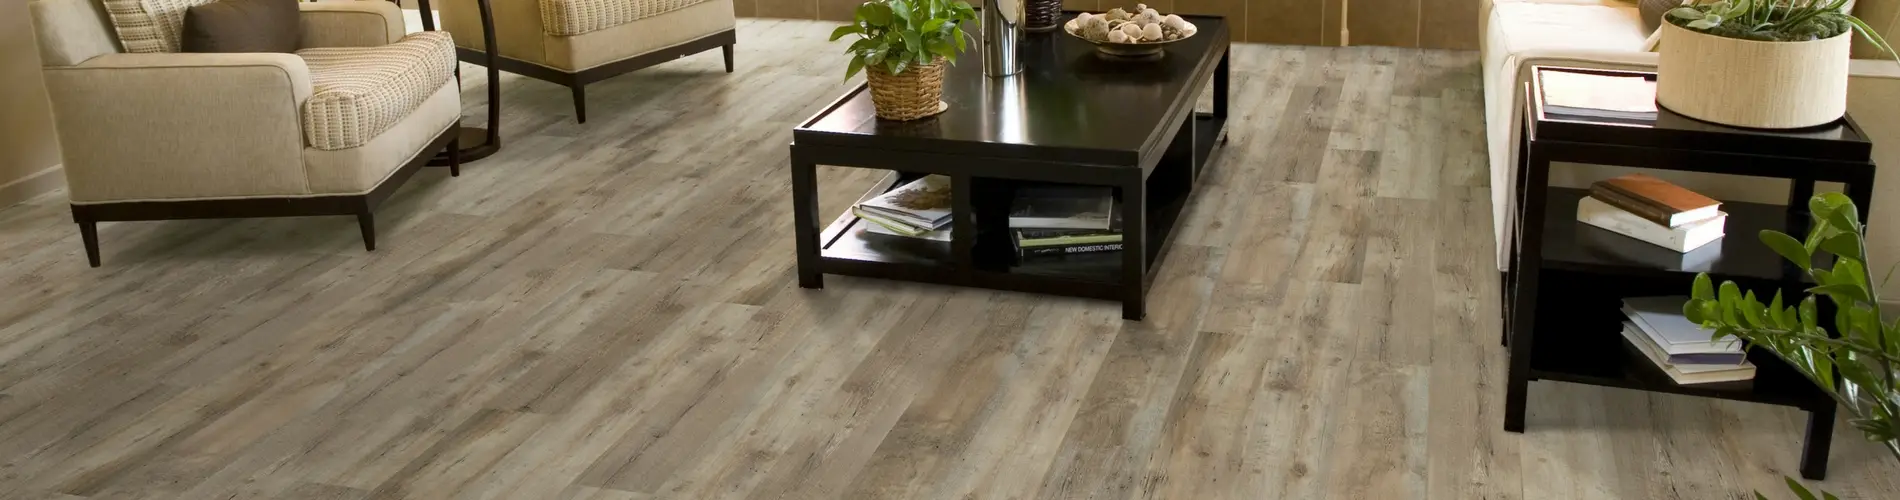 waterproof flooring